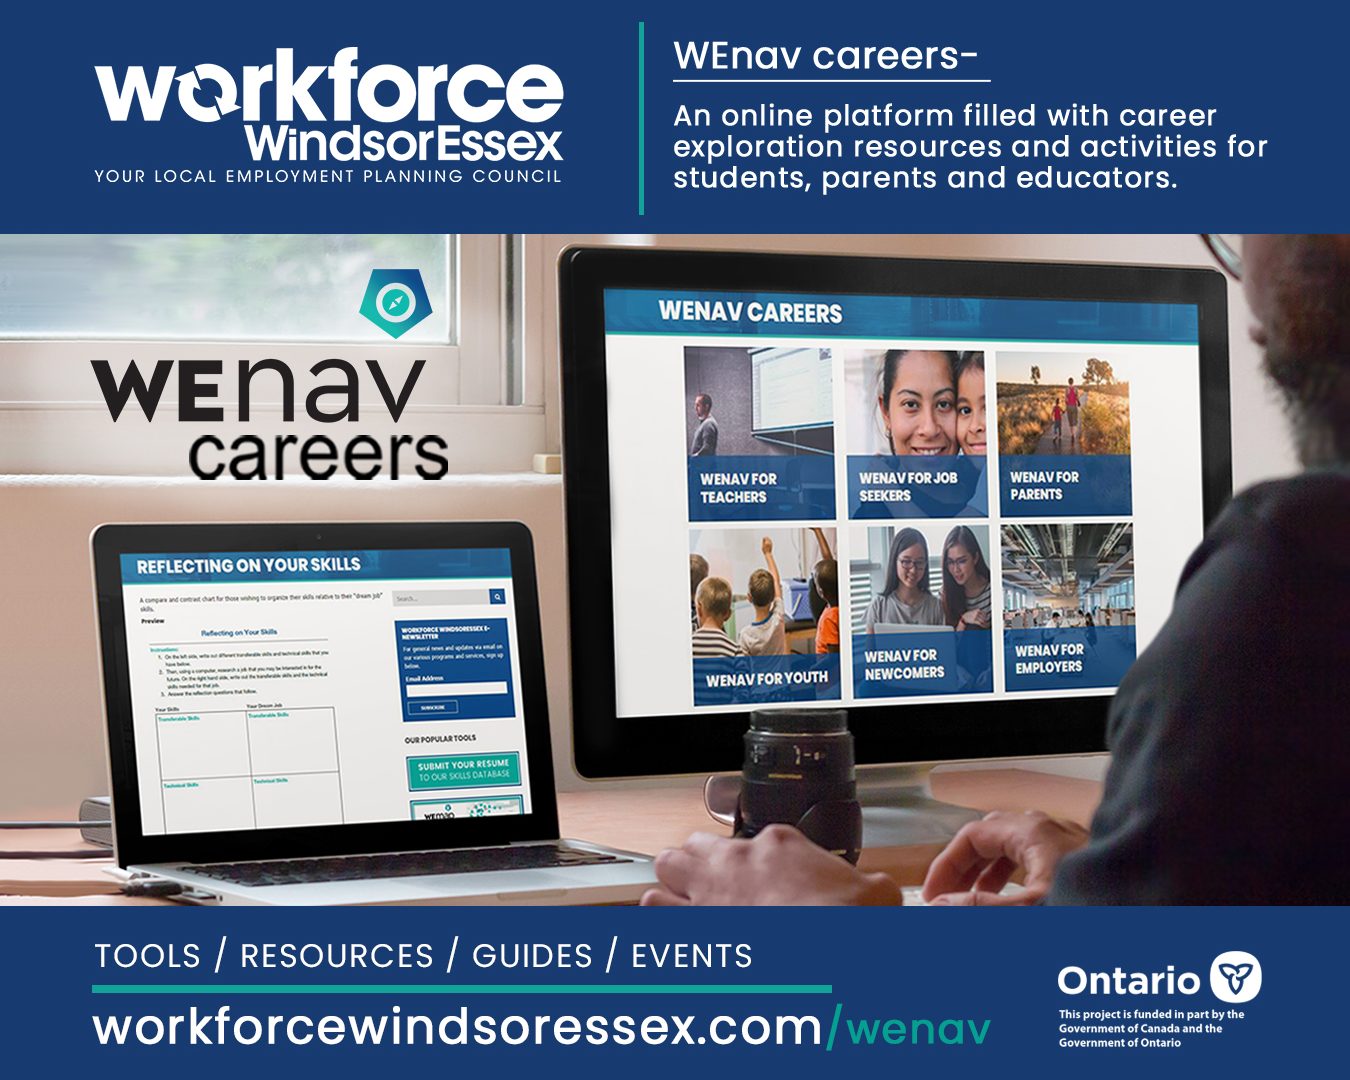 Workforce WindsorEssex WEnav Careers flyer